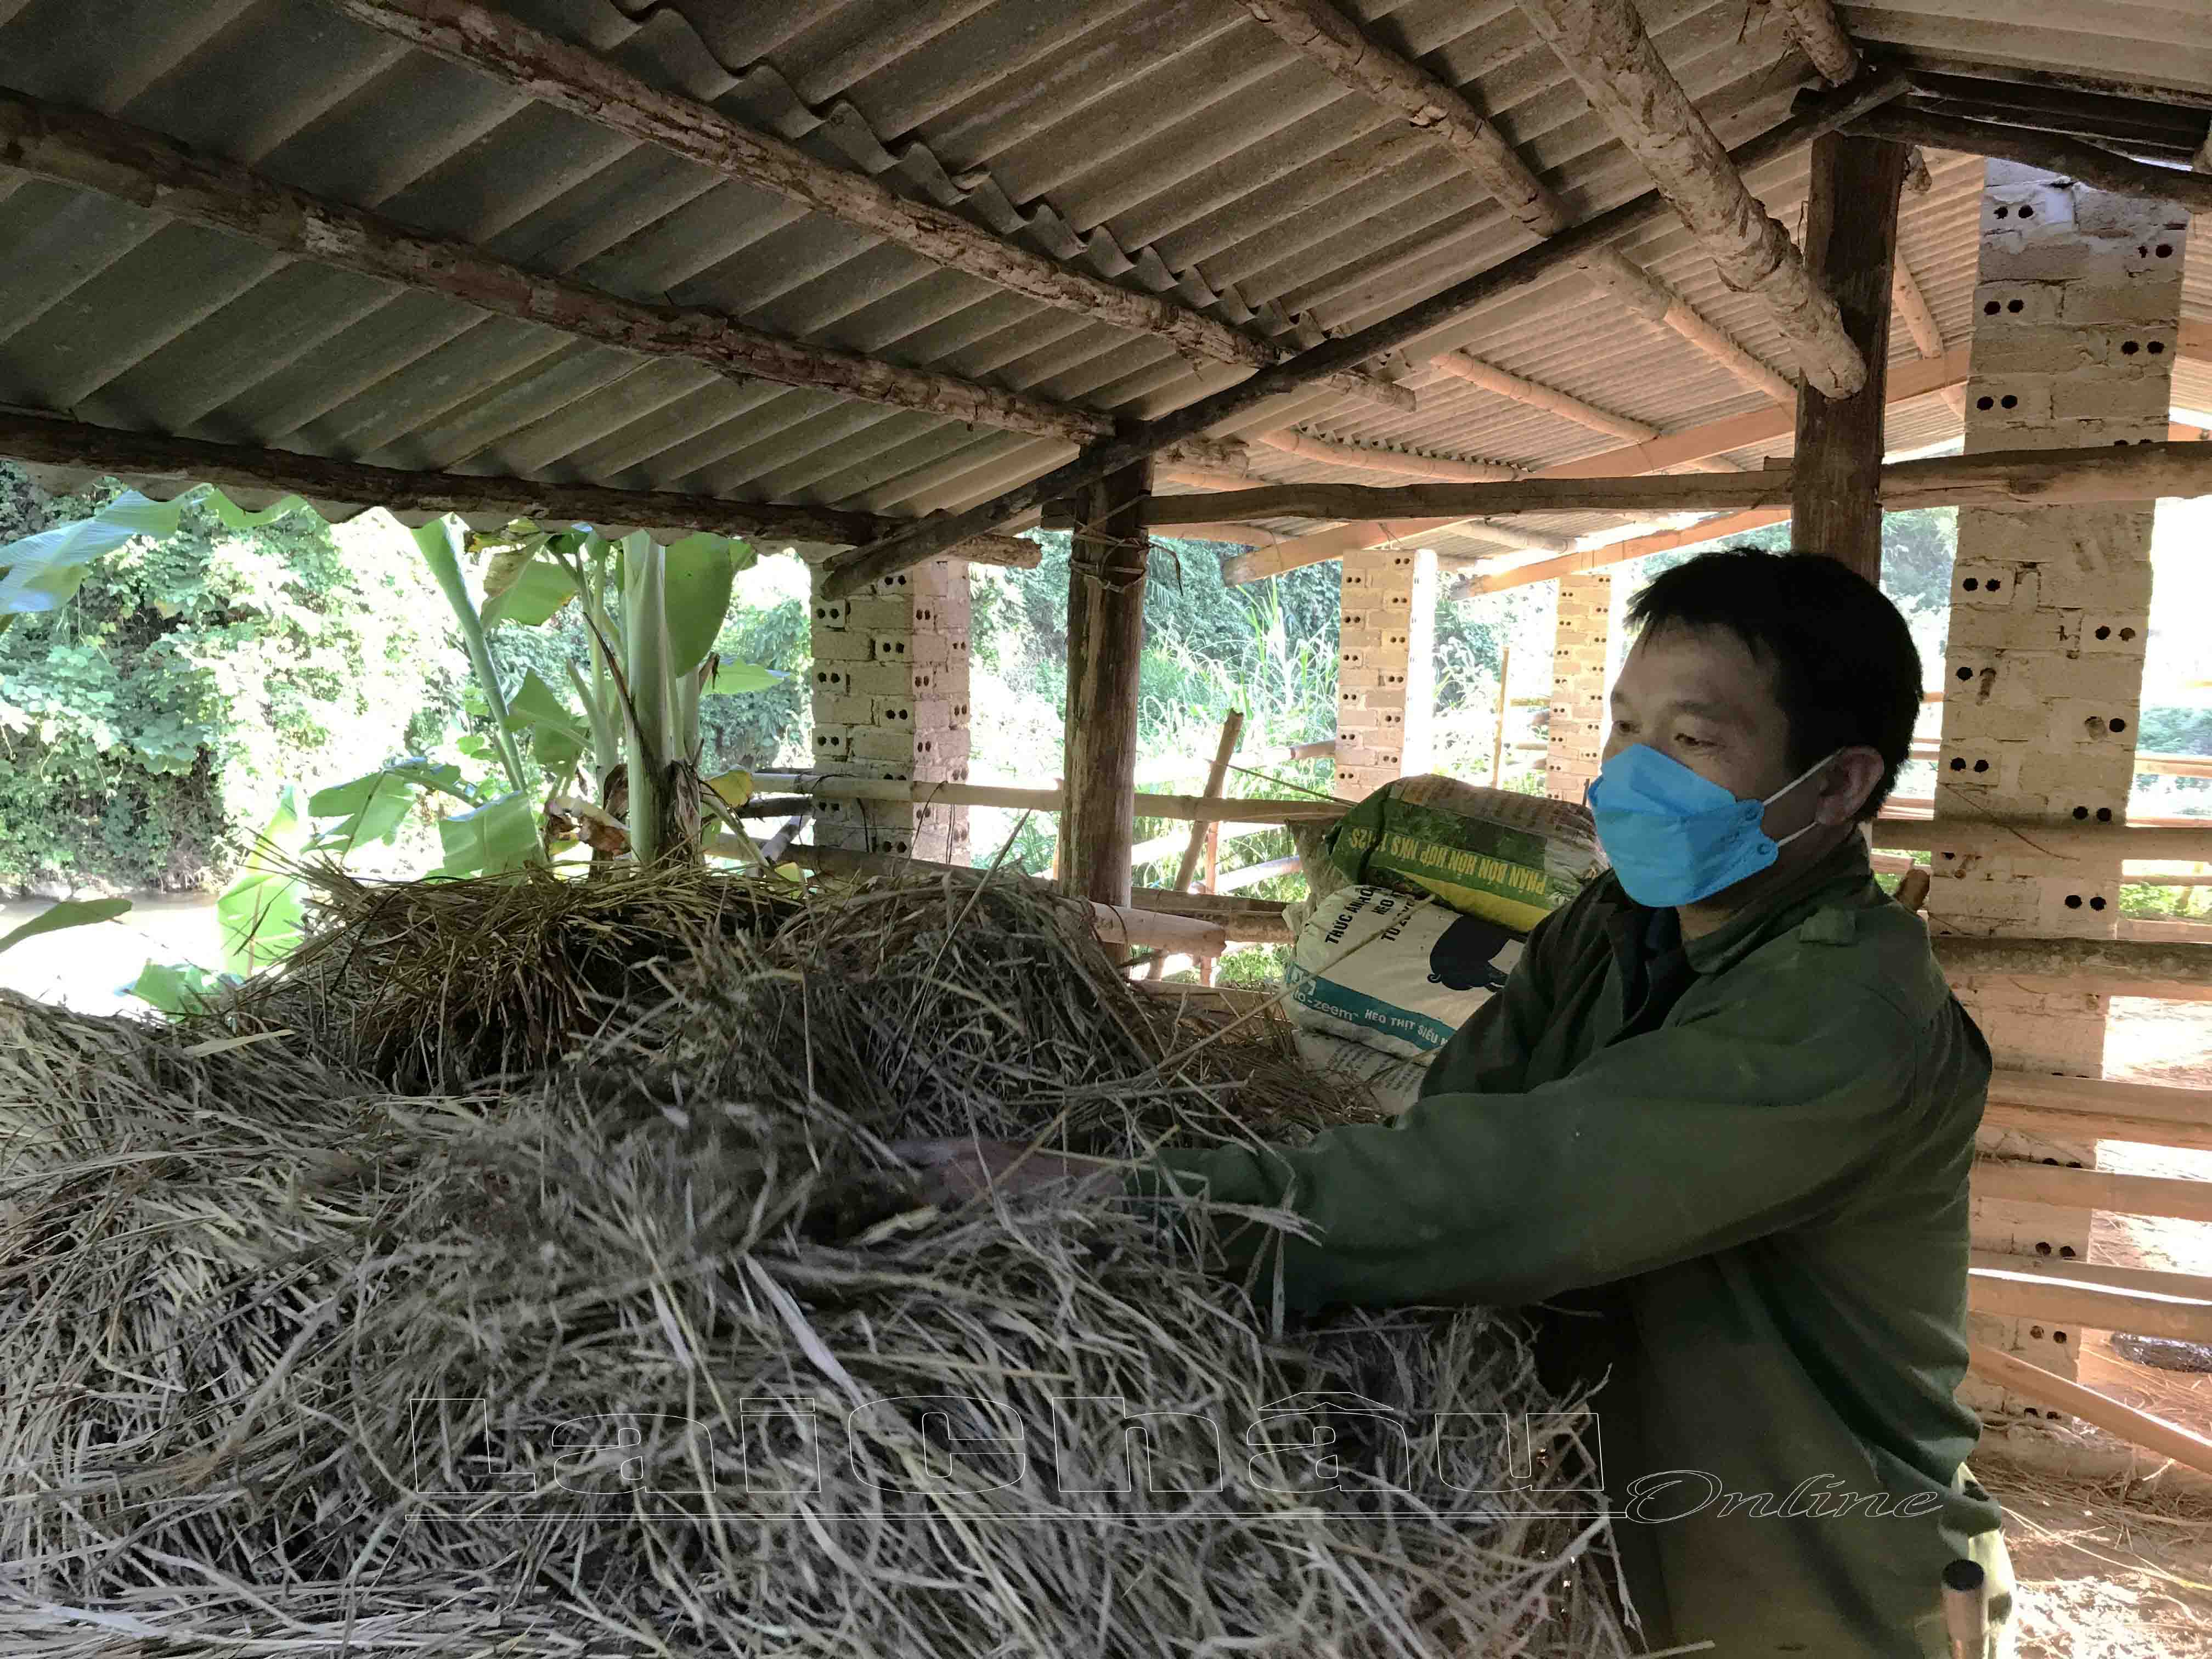  Người chăn nuôi trên địa bàn huyện Nậm Nhùn dự trữ thức ăn cho vật nuôi vào những ngày giá rét.